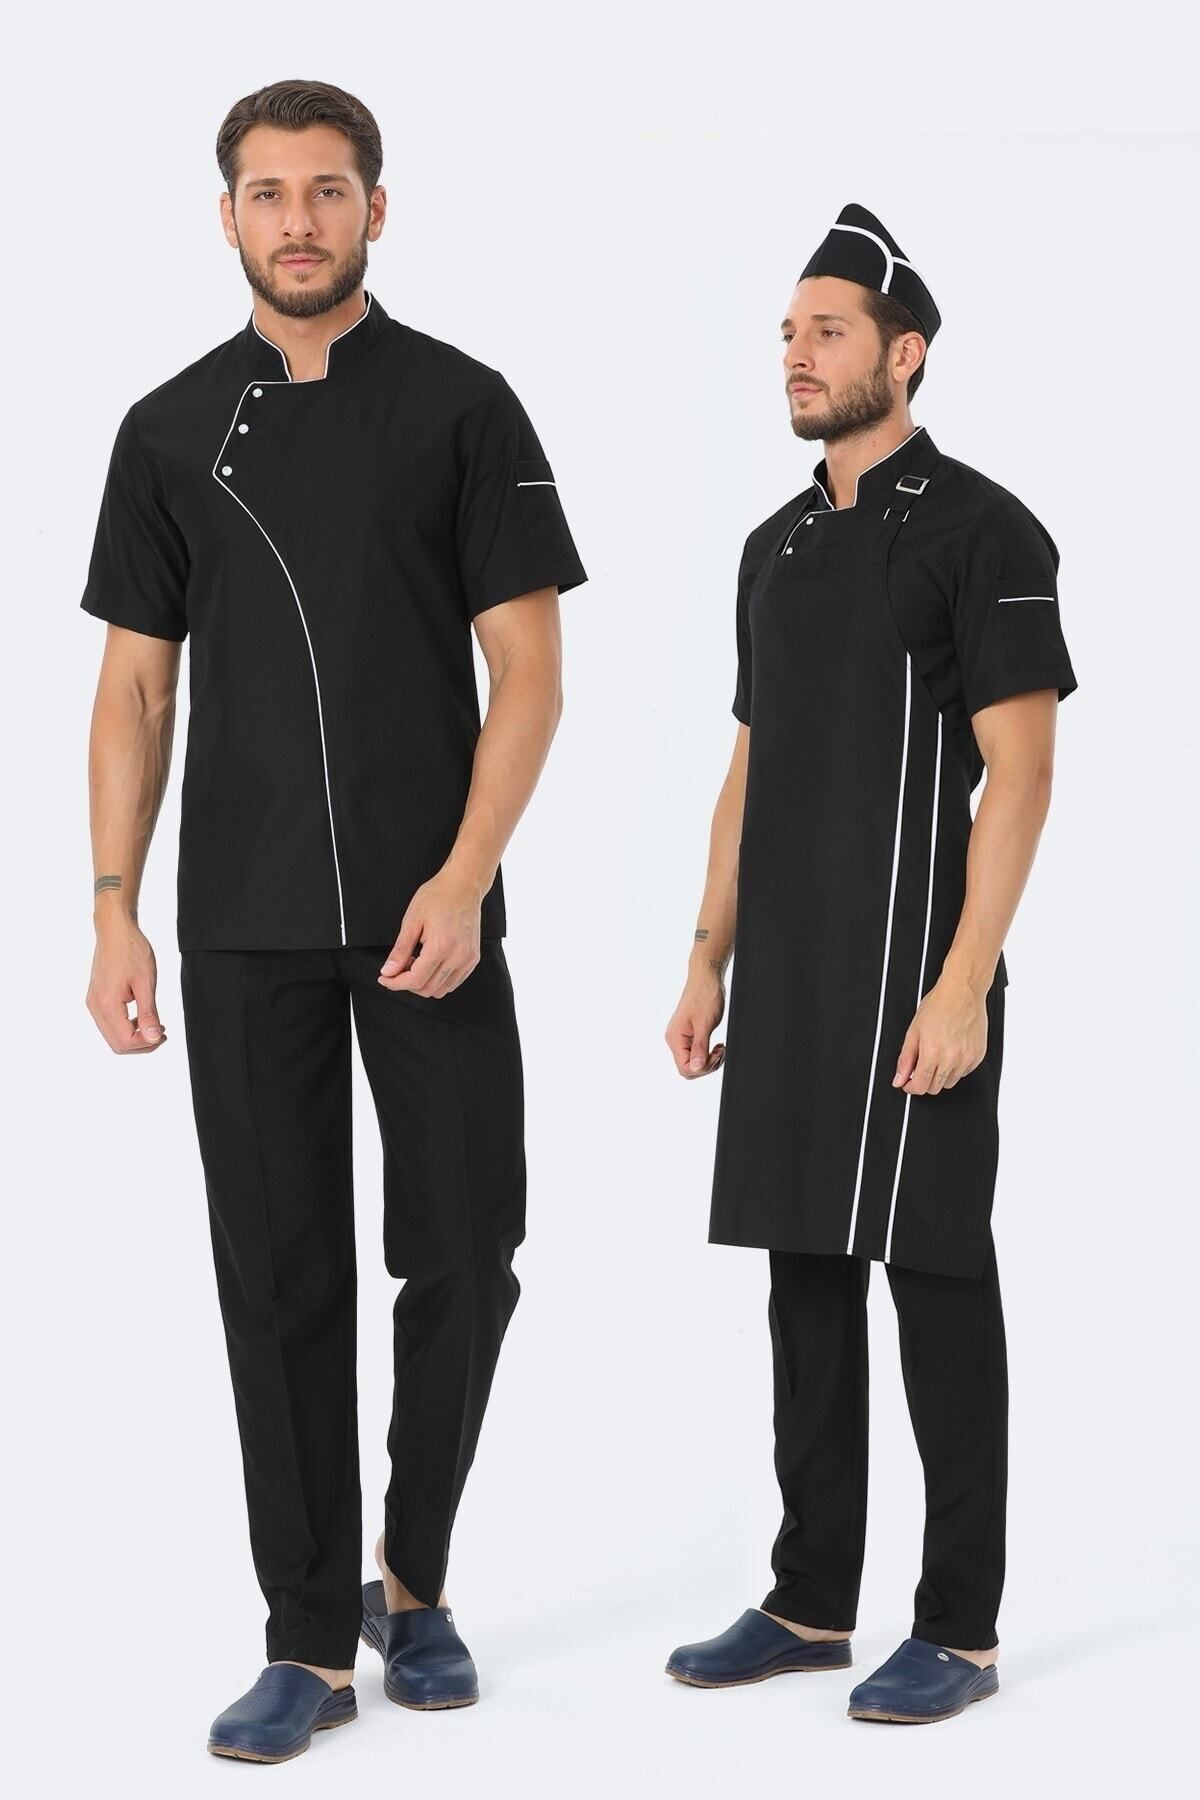 TIPTEKS Erkek Kısa Kol Siyah - Beyaz Aşçı Ceket + Aşçı Pantolon + Askılı Önlük Ve Kep Dörtlü Takım